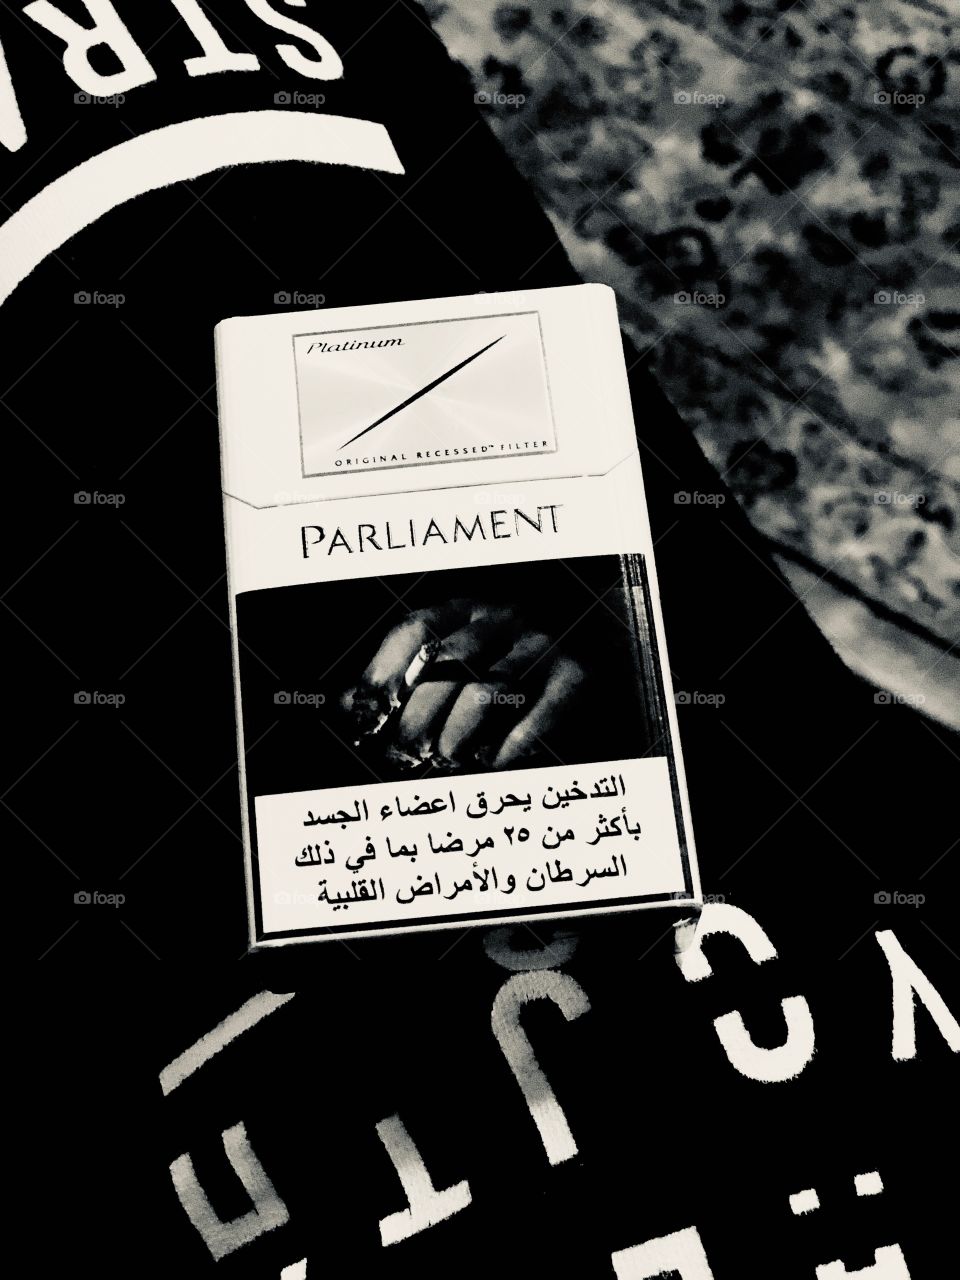 Parliament platinum 